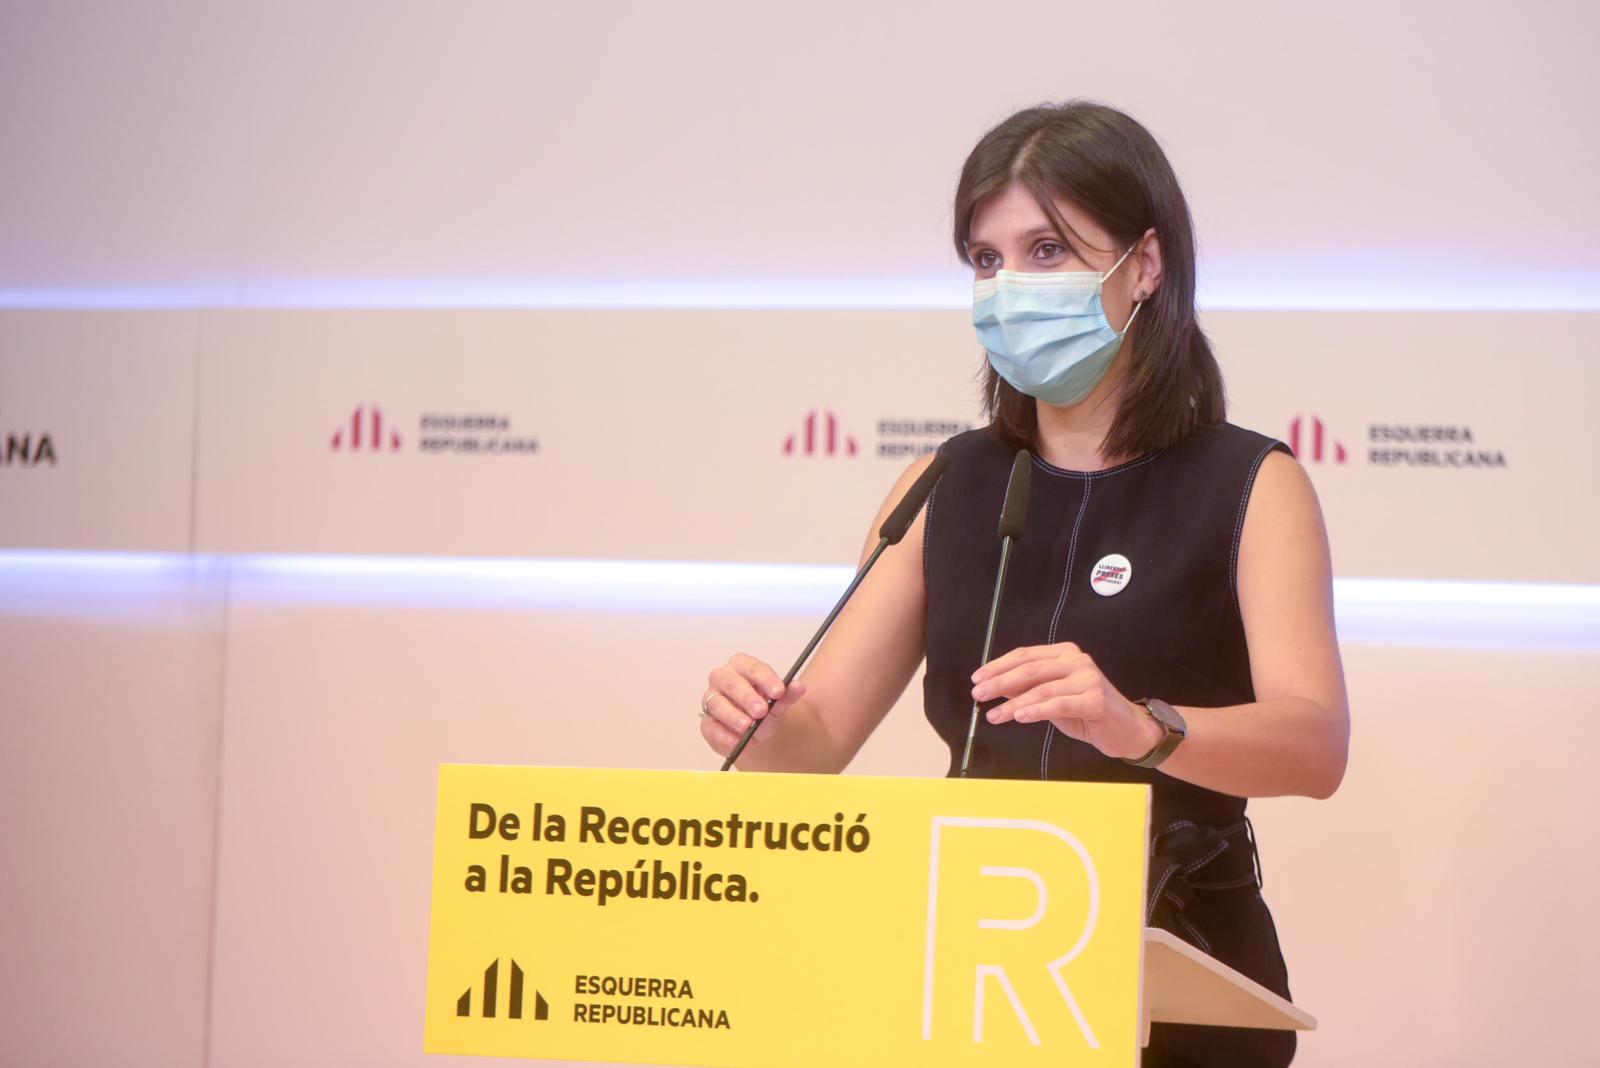 ERC evita comentar el llibre de Puigdemont: "No volem generar més retrets"